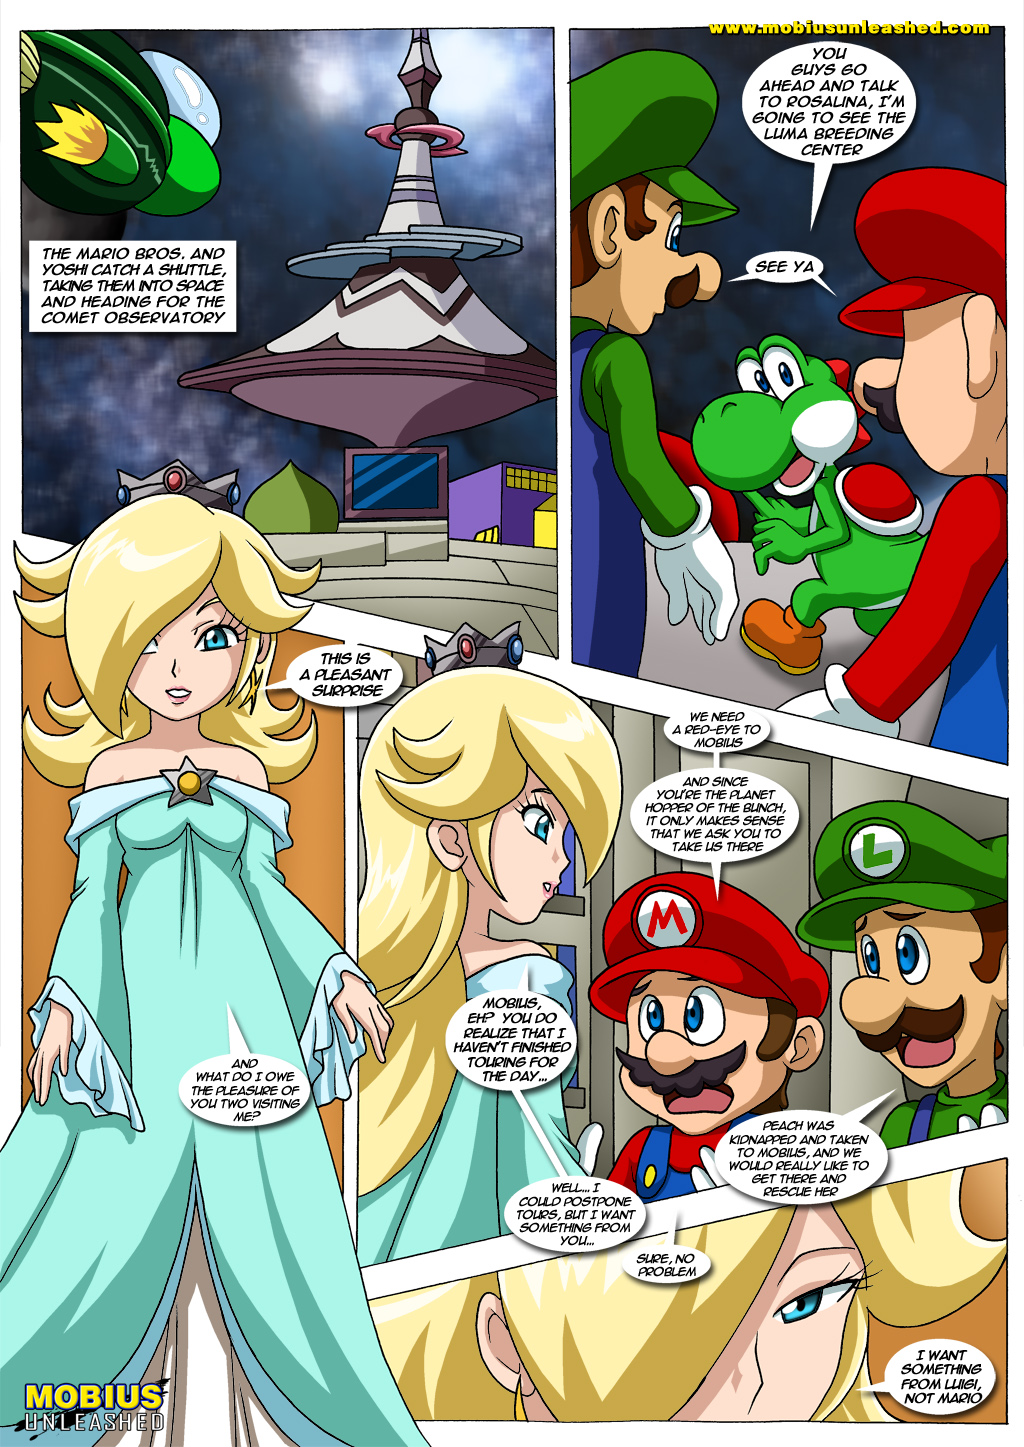 Mario-Sonic-page13--Gotofap.tk--33296182.jpg